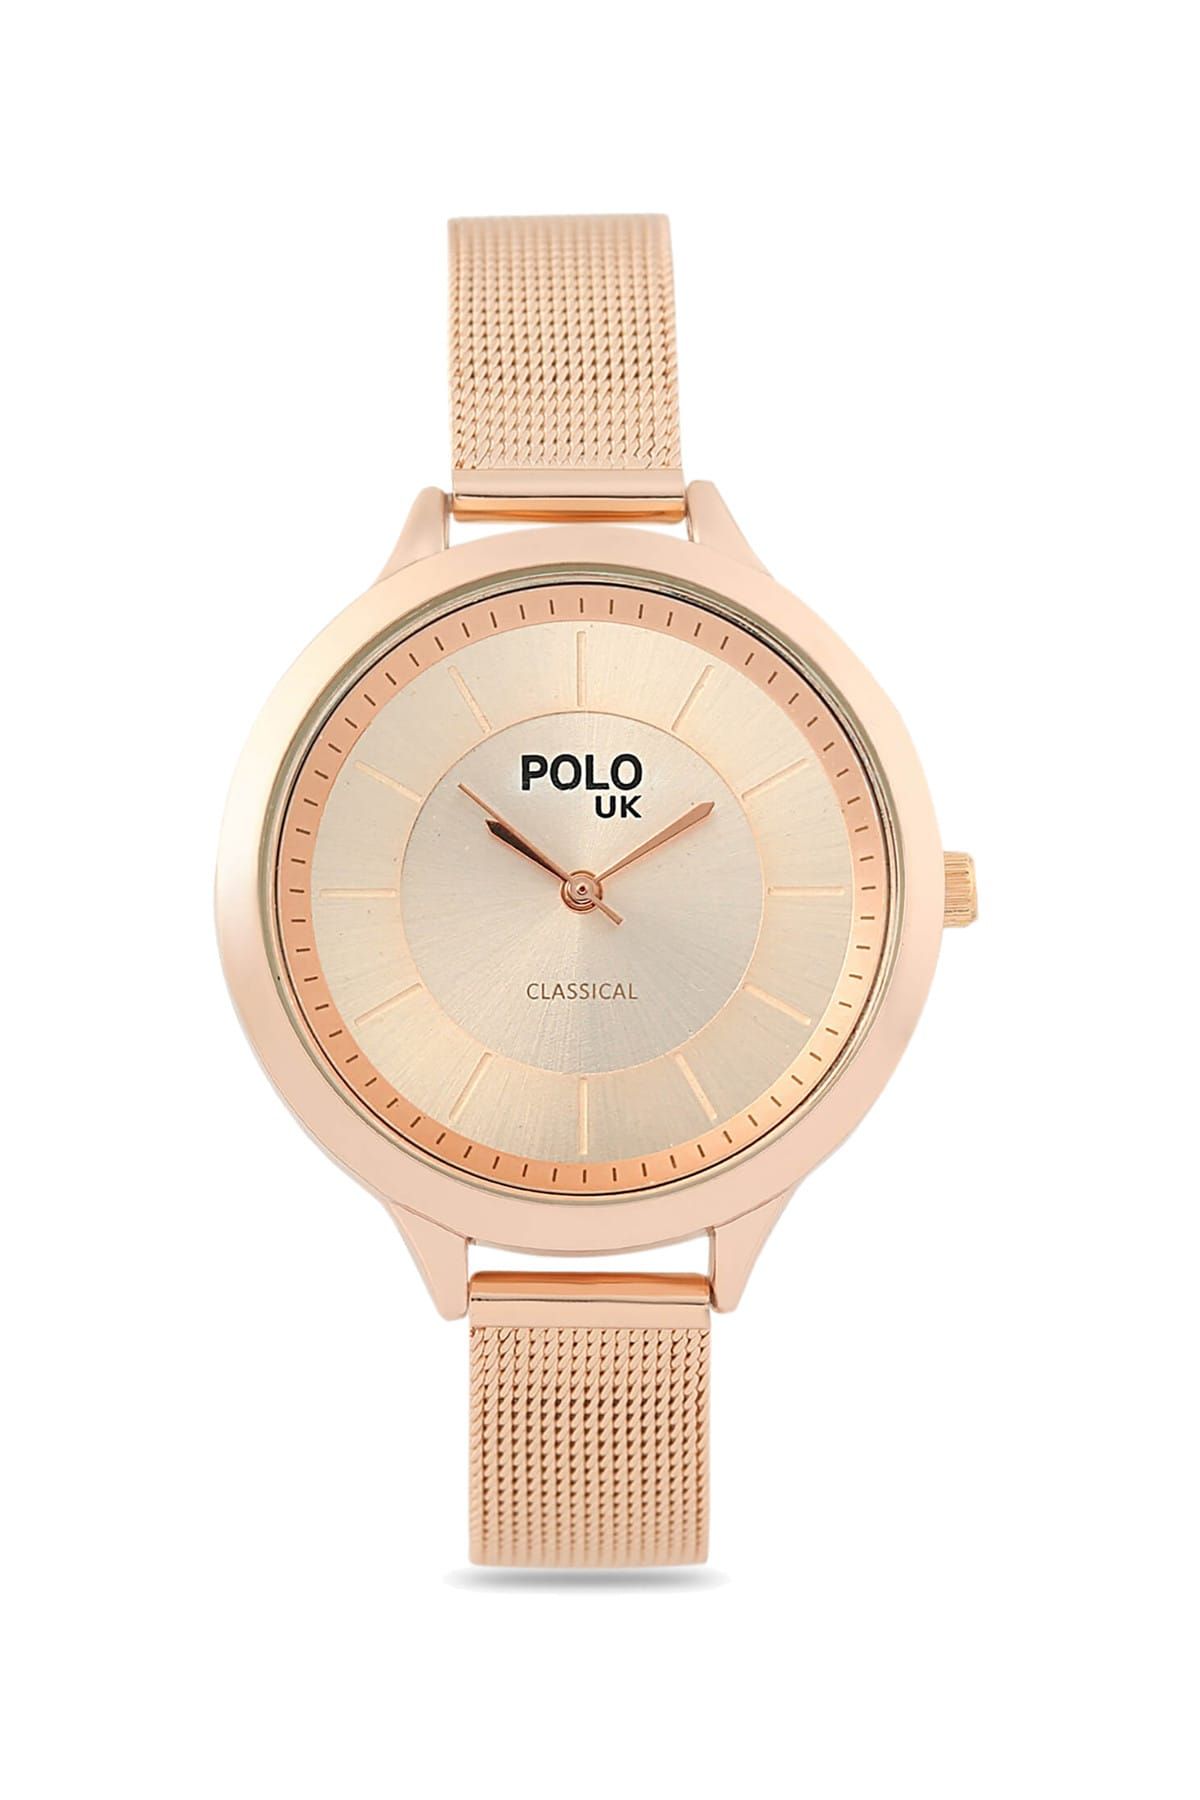 Polo U.K. Hasır Metal Kadın Kol Saati POLOUK 5452